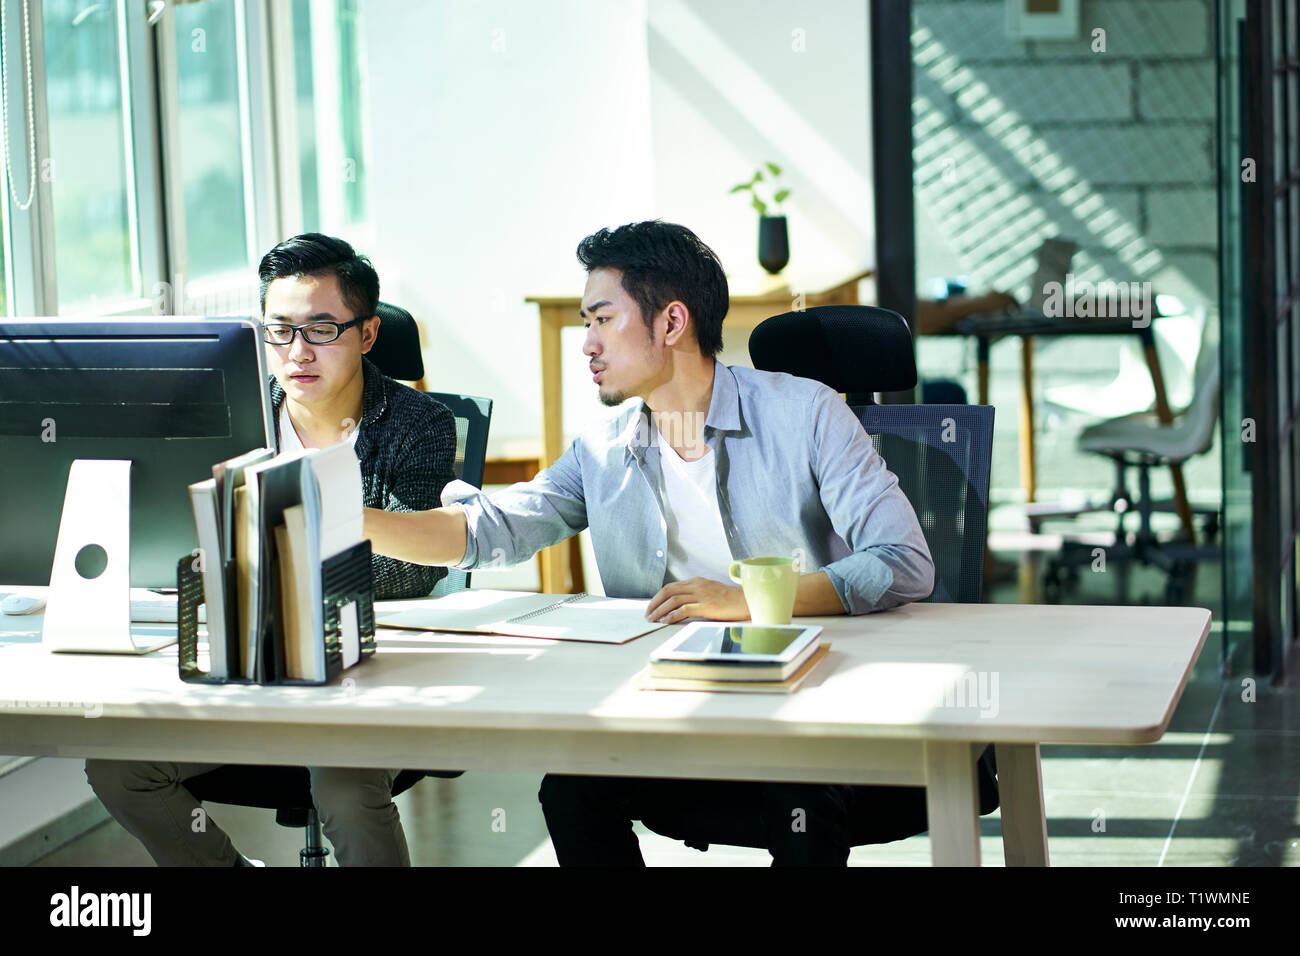 Deux jeunes gens d'affaires asiatiques travaillant ensemble en fonction de discuter affaires avec ordinateur de bureau. Banque D'Images